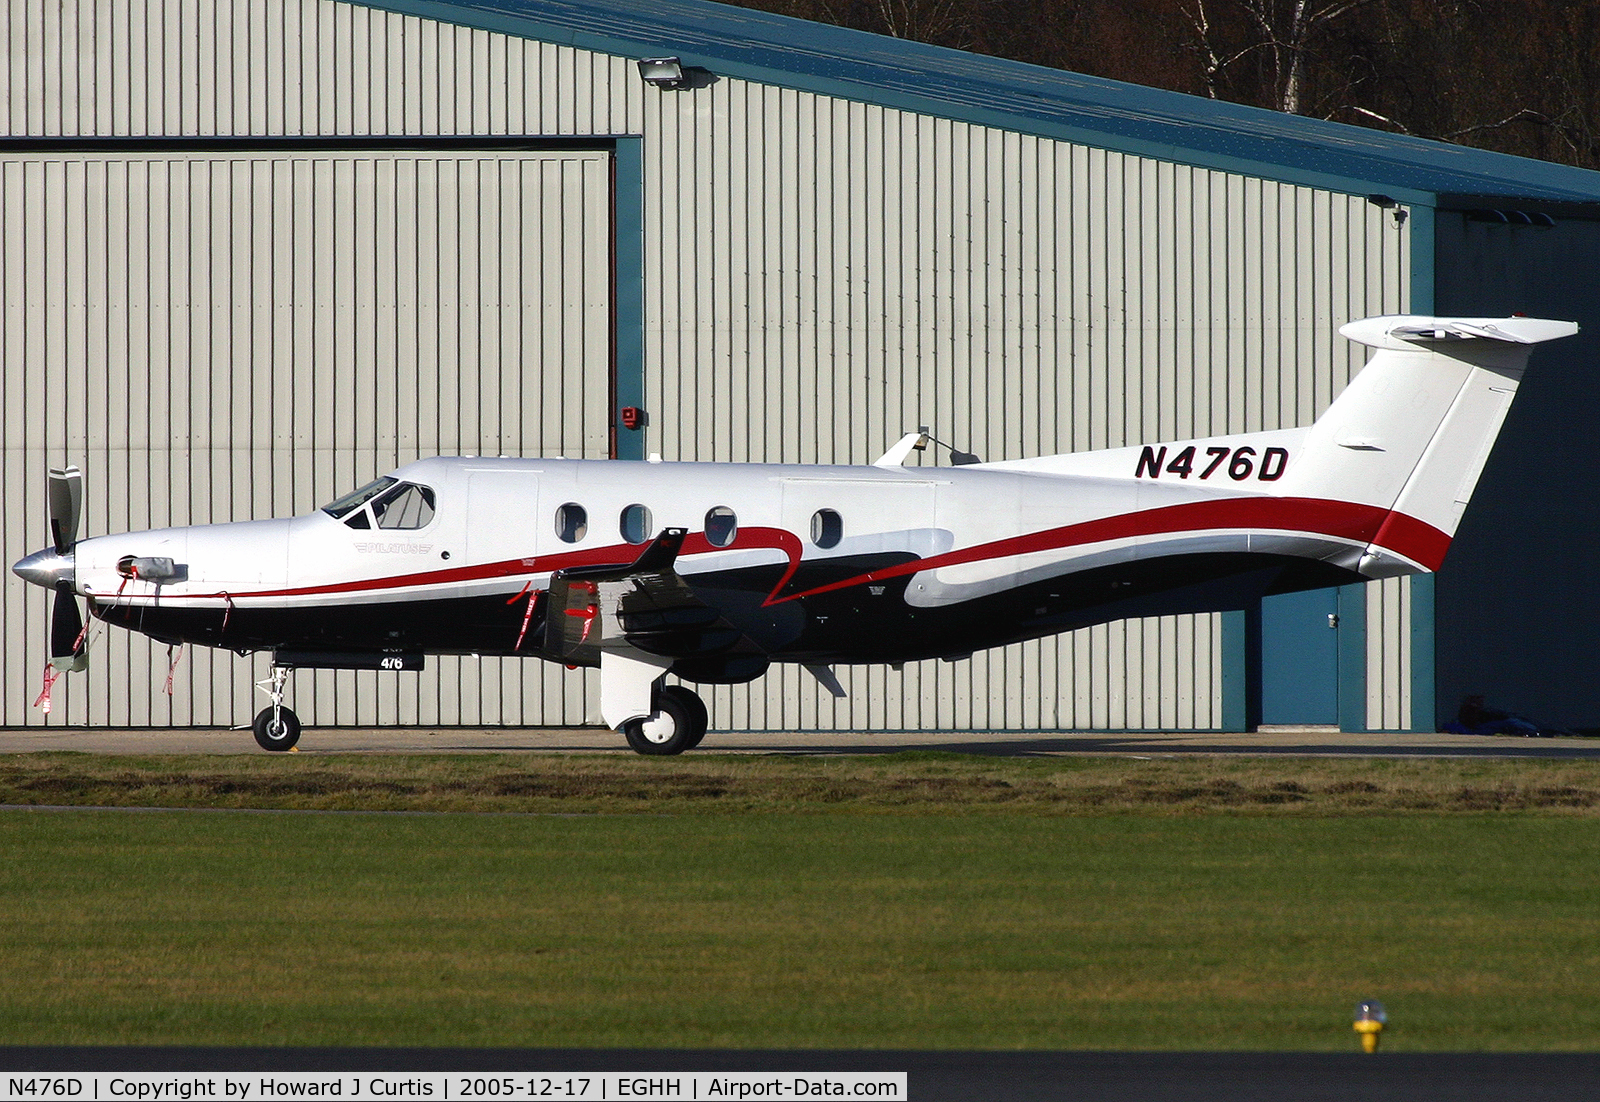 N476D, 2002 Pilatus PC-12/45 C/N 476, Privately owned.